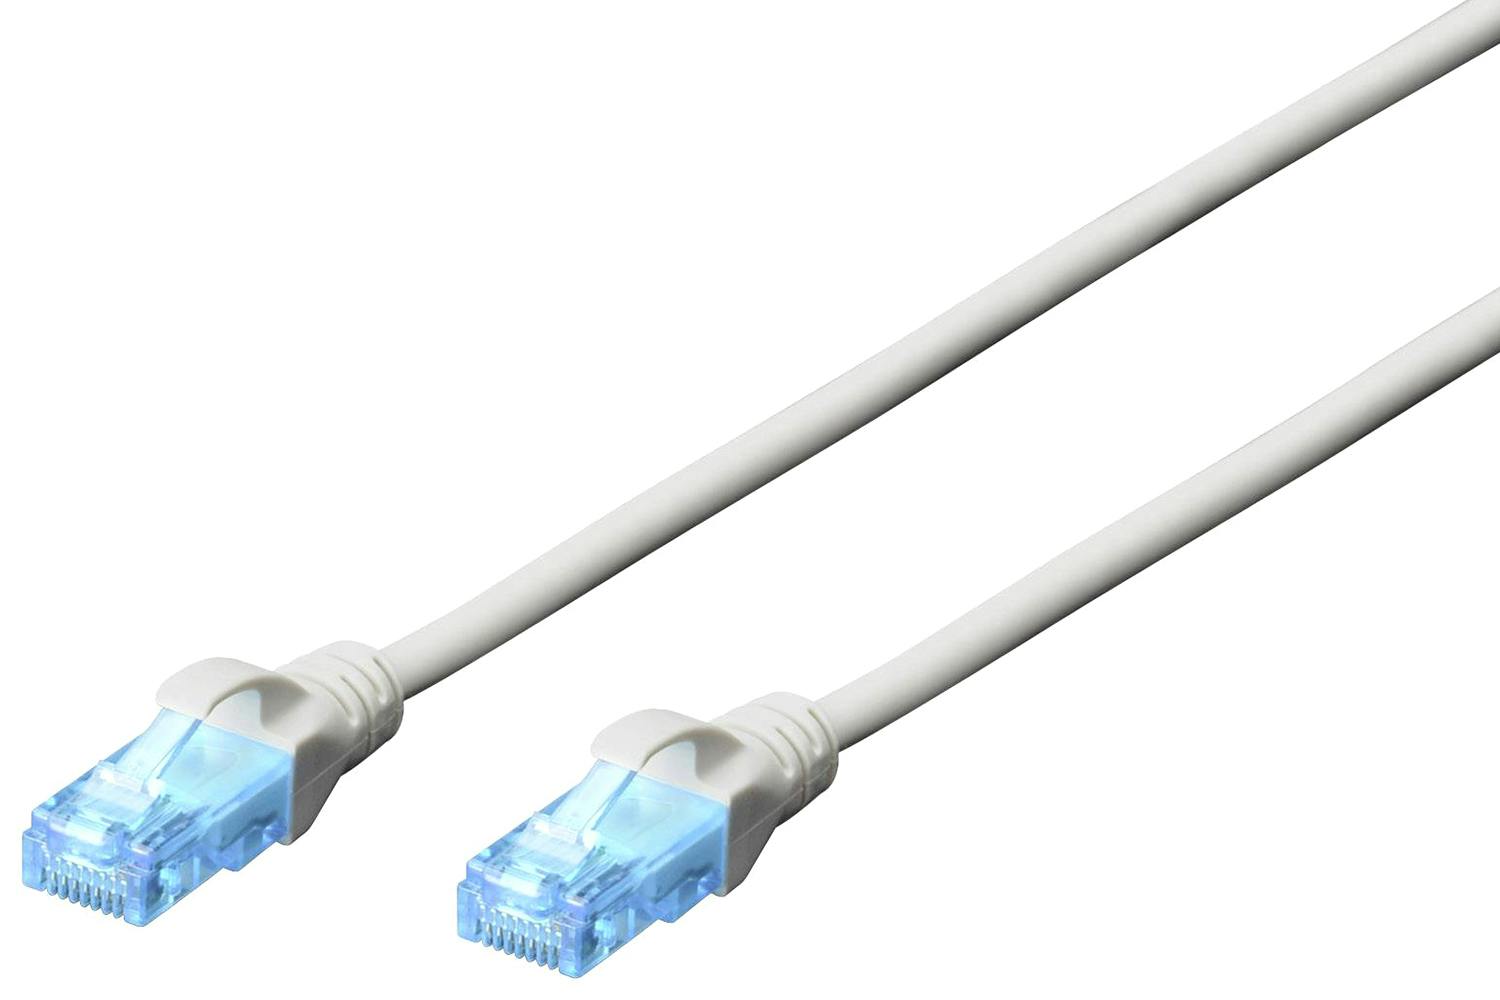 Digitus 20m CAT 5e U/UTP RJ45 Network Cable | Grey